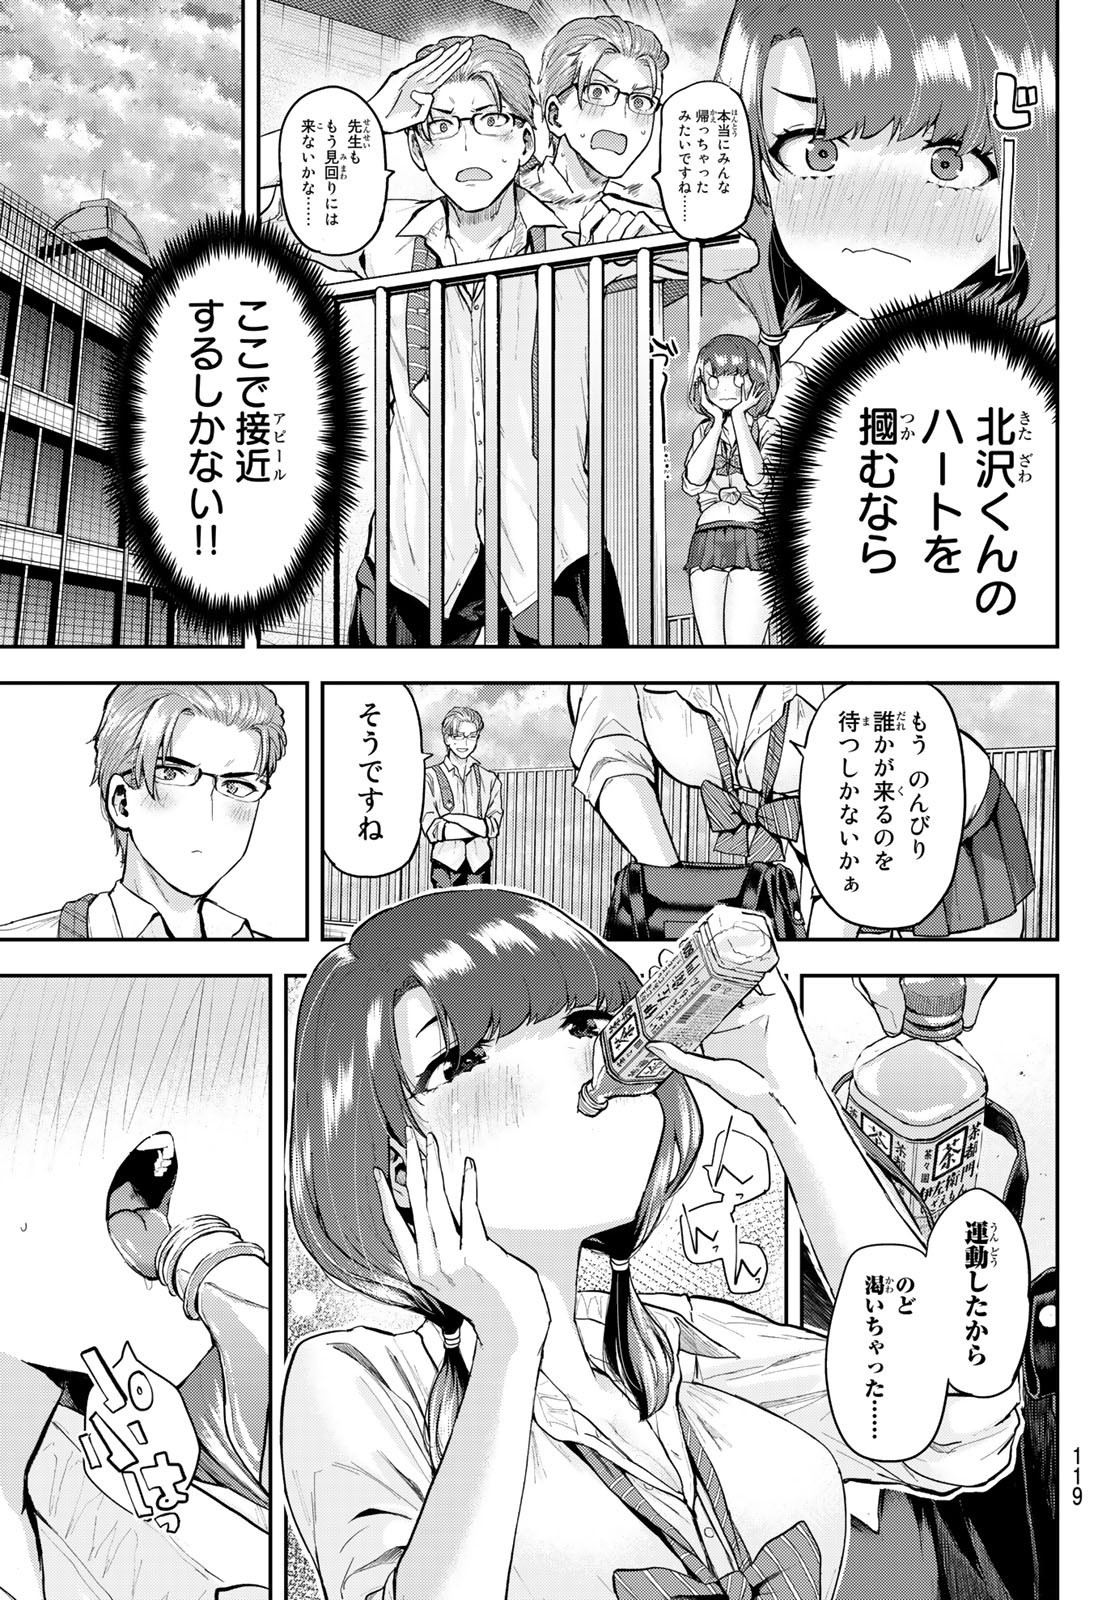 Kitazawa-kun wa A Class - Chapter 008 - Page 3